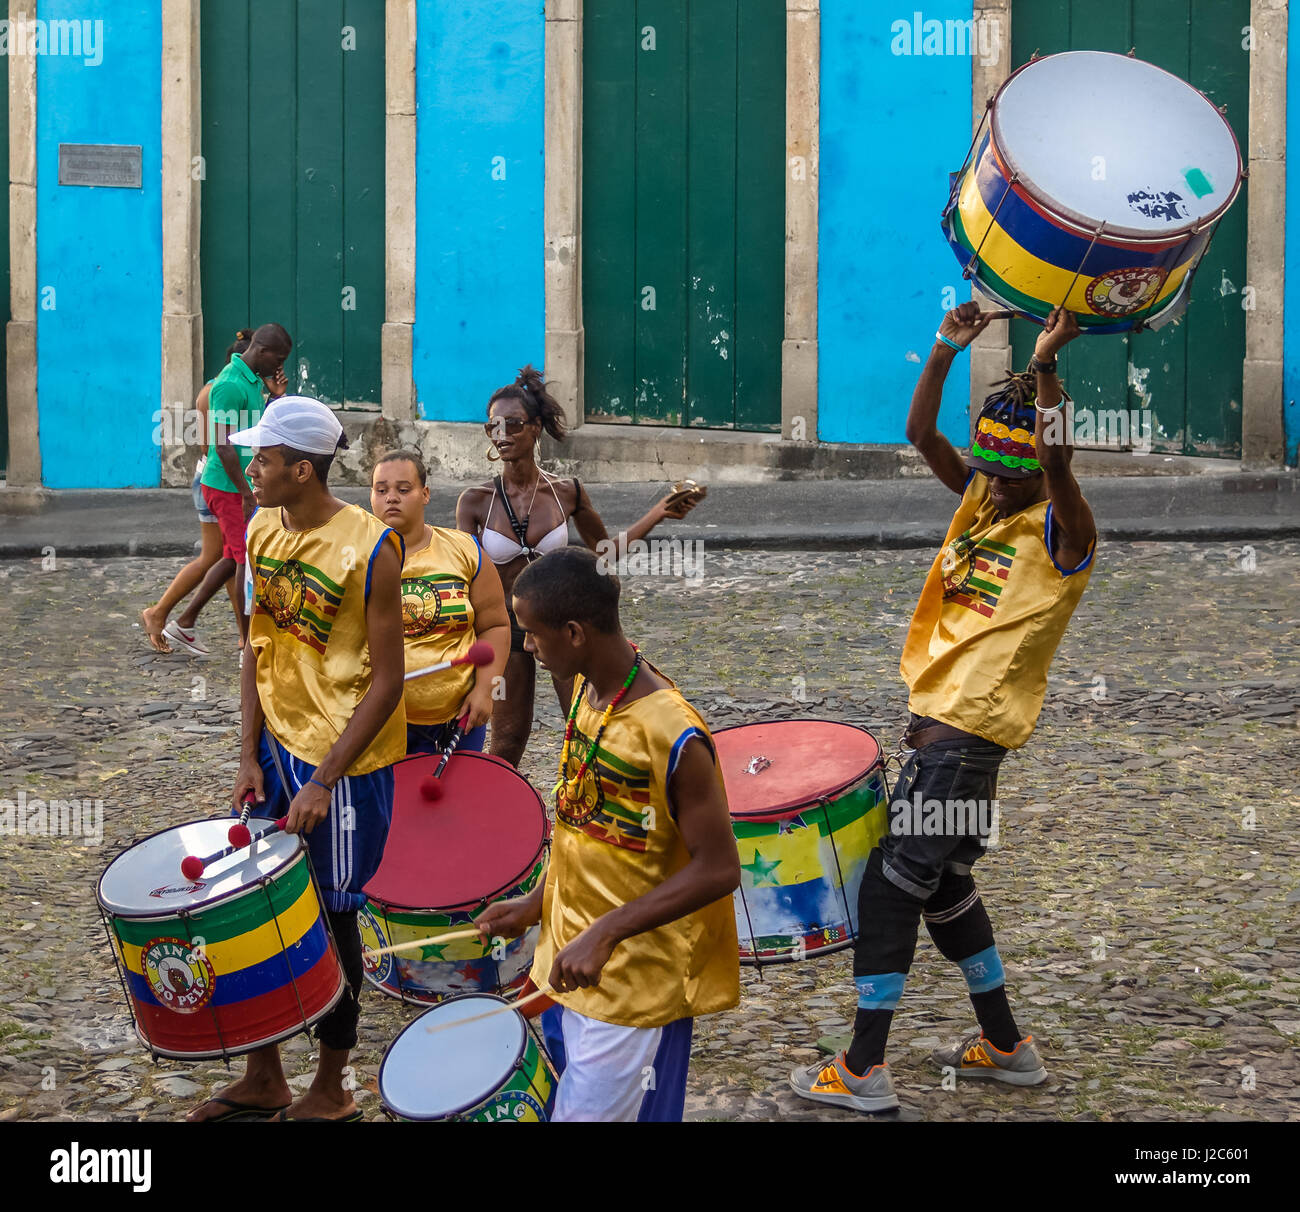 Groupe de percussions brésiliennes dans les rues de Pelourinho - Salvador, Bahia, Brésil Banque D'Images